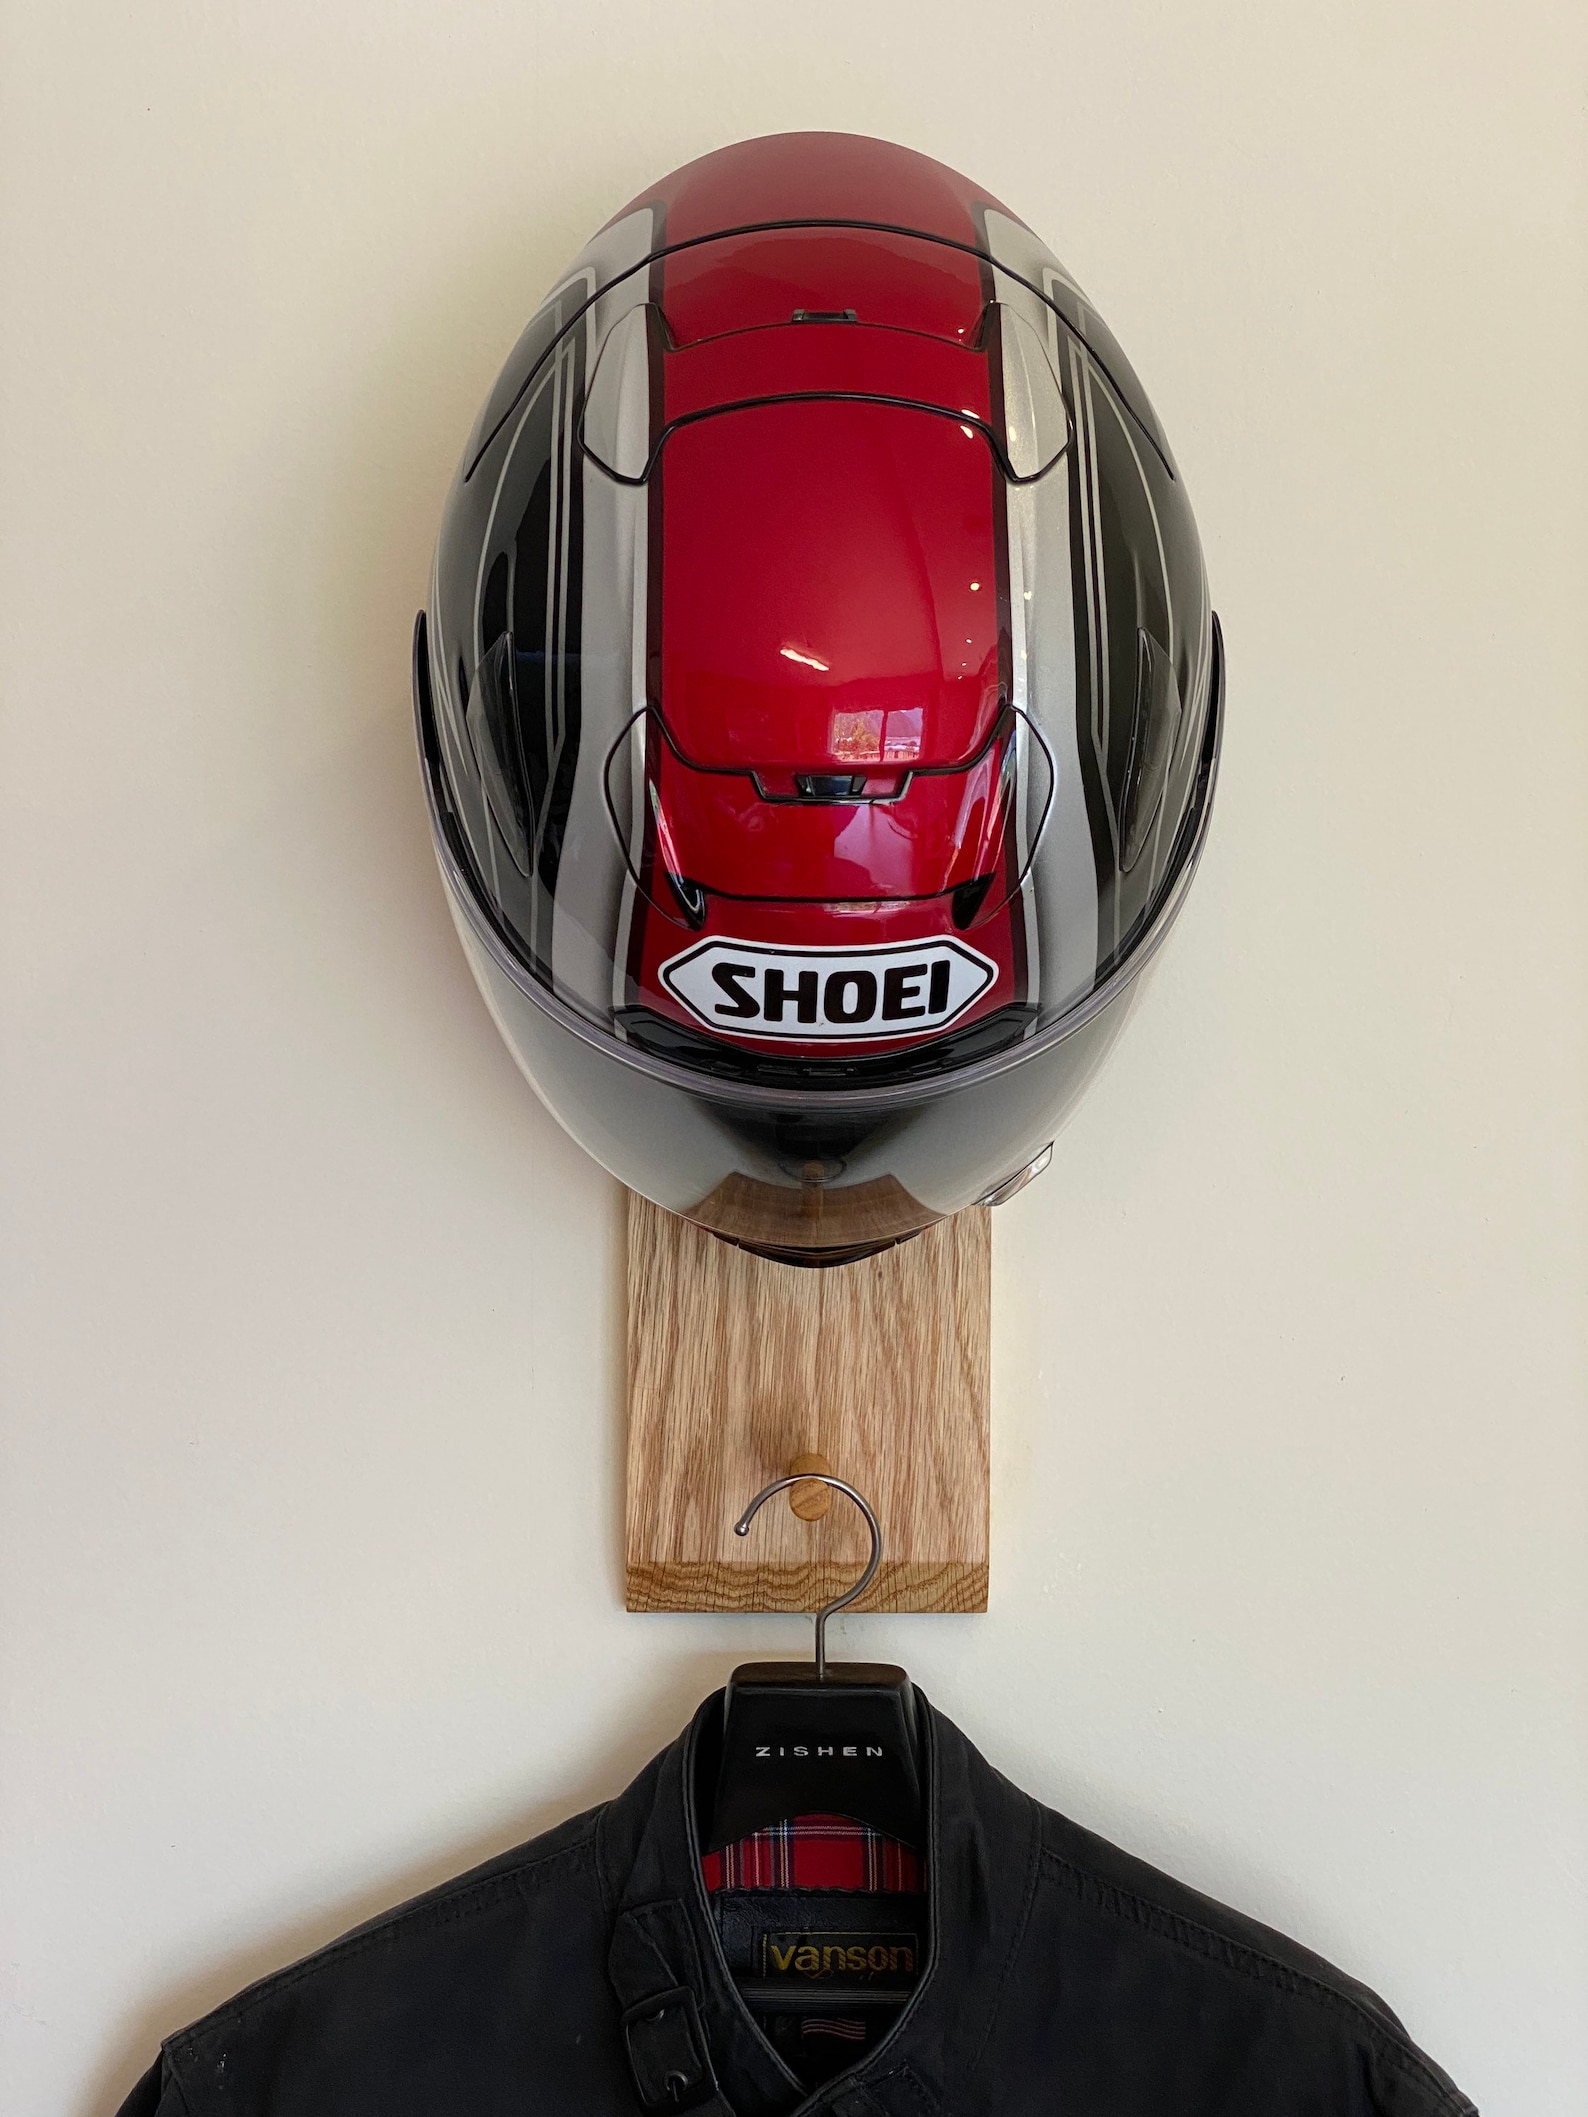 Motorcycle helmet rack Helmet hanger Helmet storage Wall | Etsy